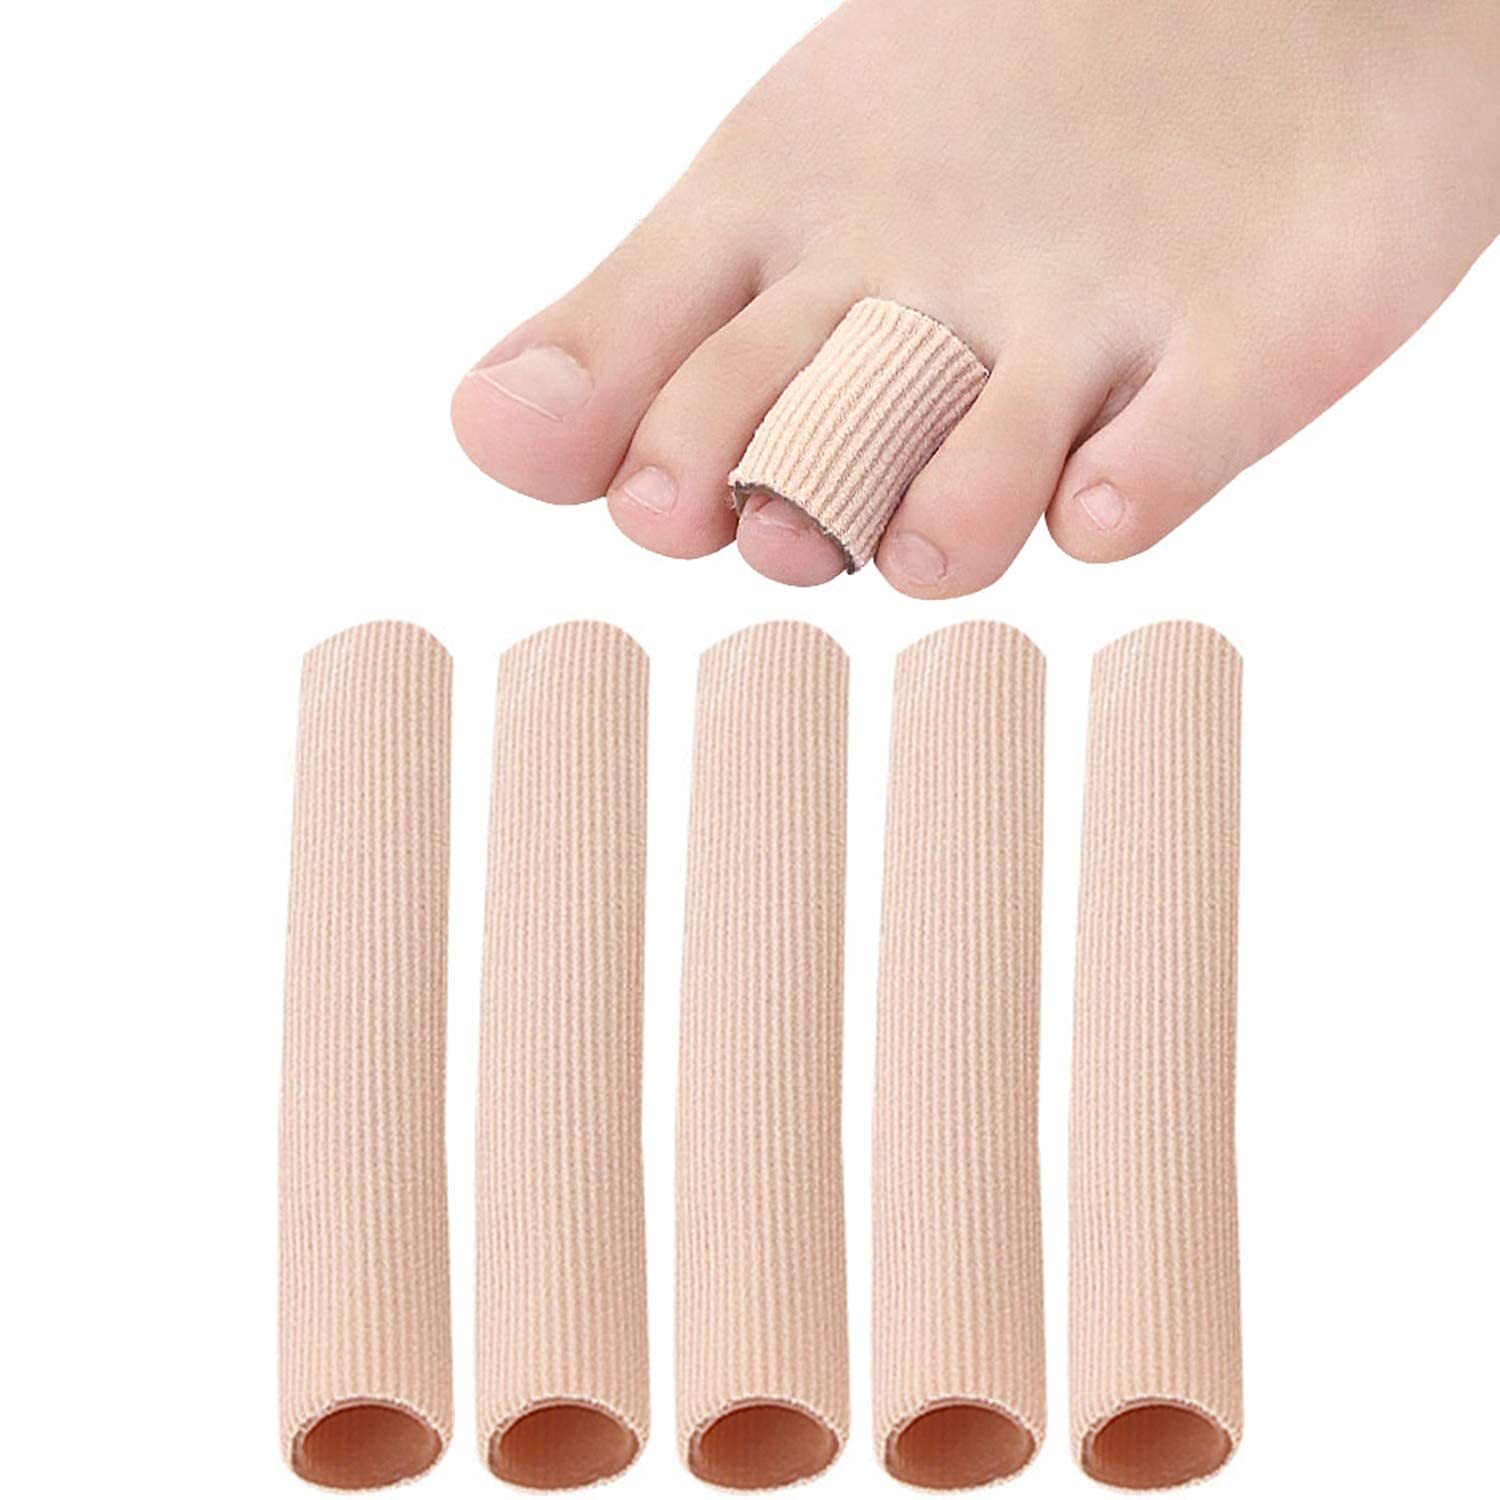 5Pcs Practical Feet Tube Protectors Cover Compression Elastic